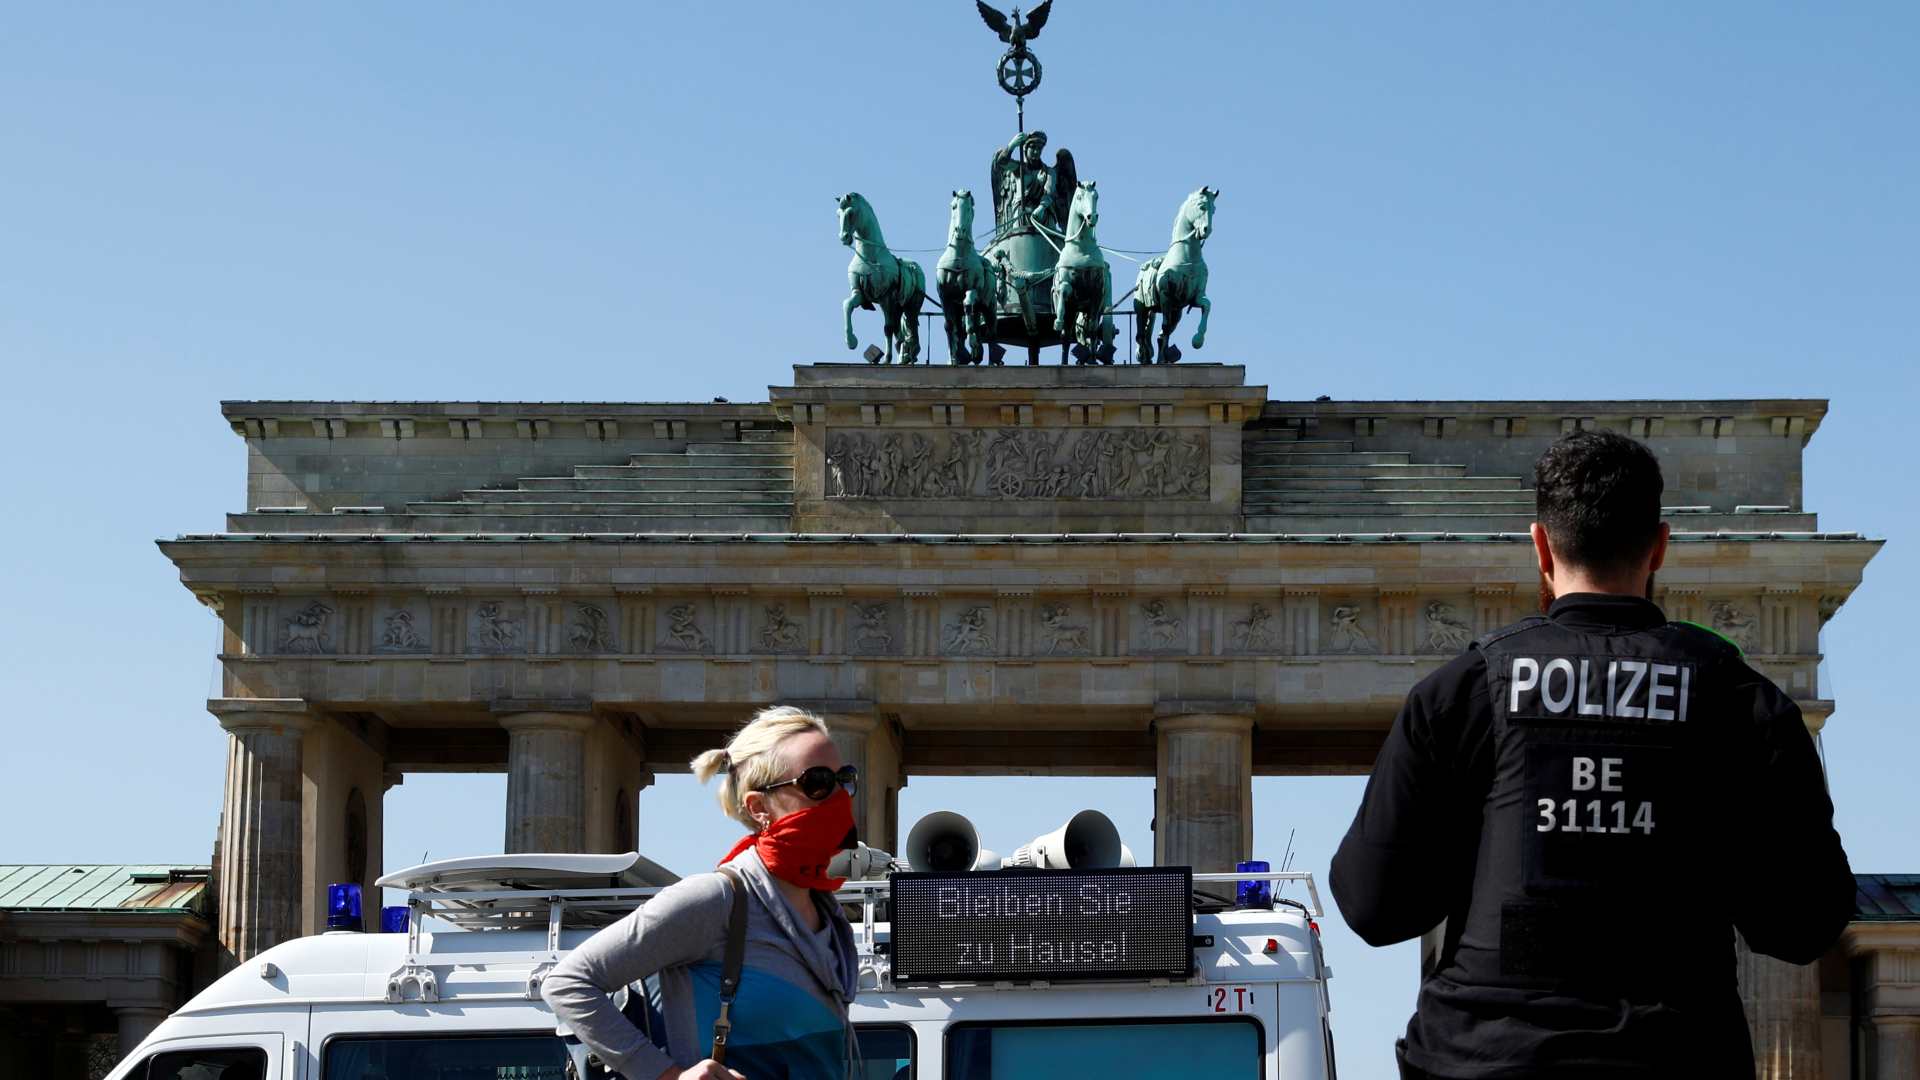 Alemania cree que la pandemia ya es “controlable” y fabricará 50 millones de mascarillas a la semana